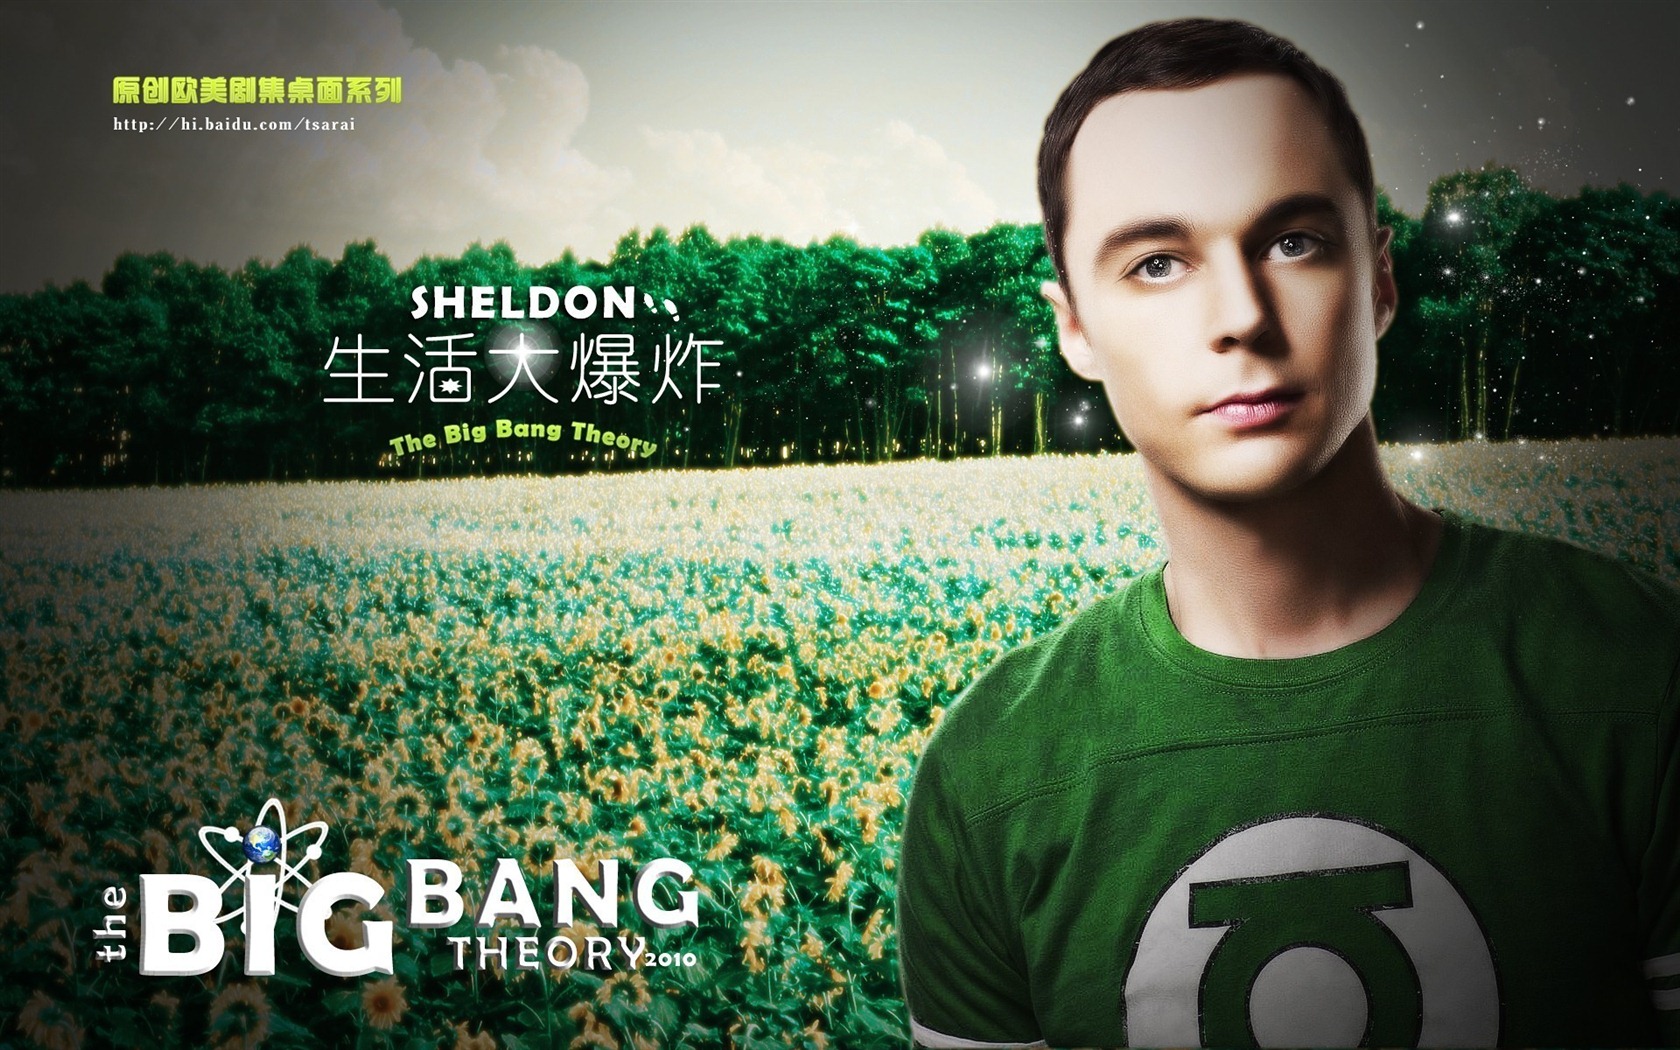 The Big Bang Theory 生活大爆炸電視劇高清壁紙 #16 - 1680x1050